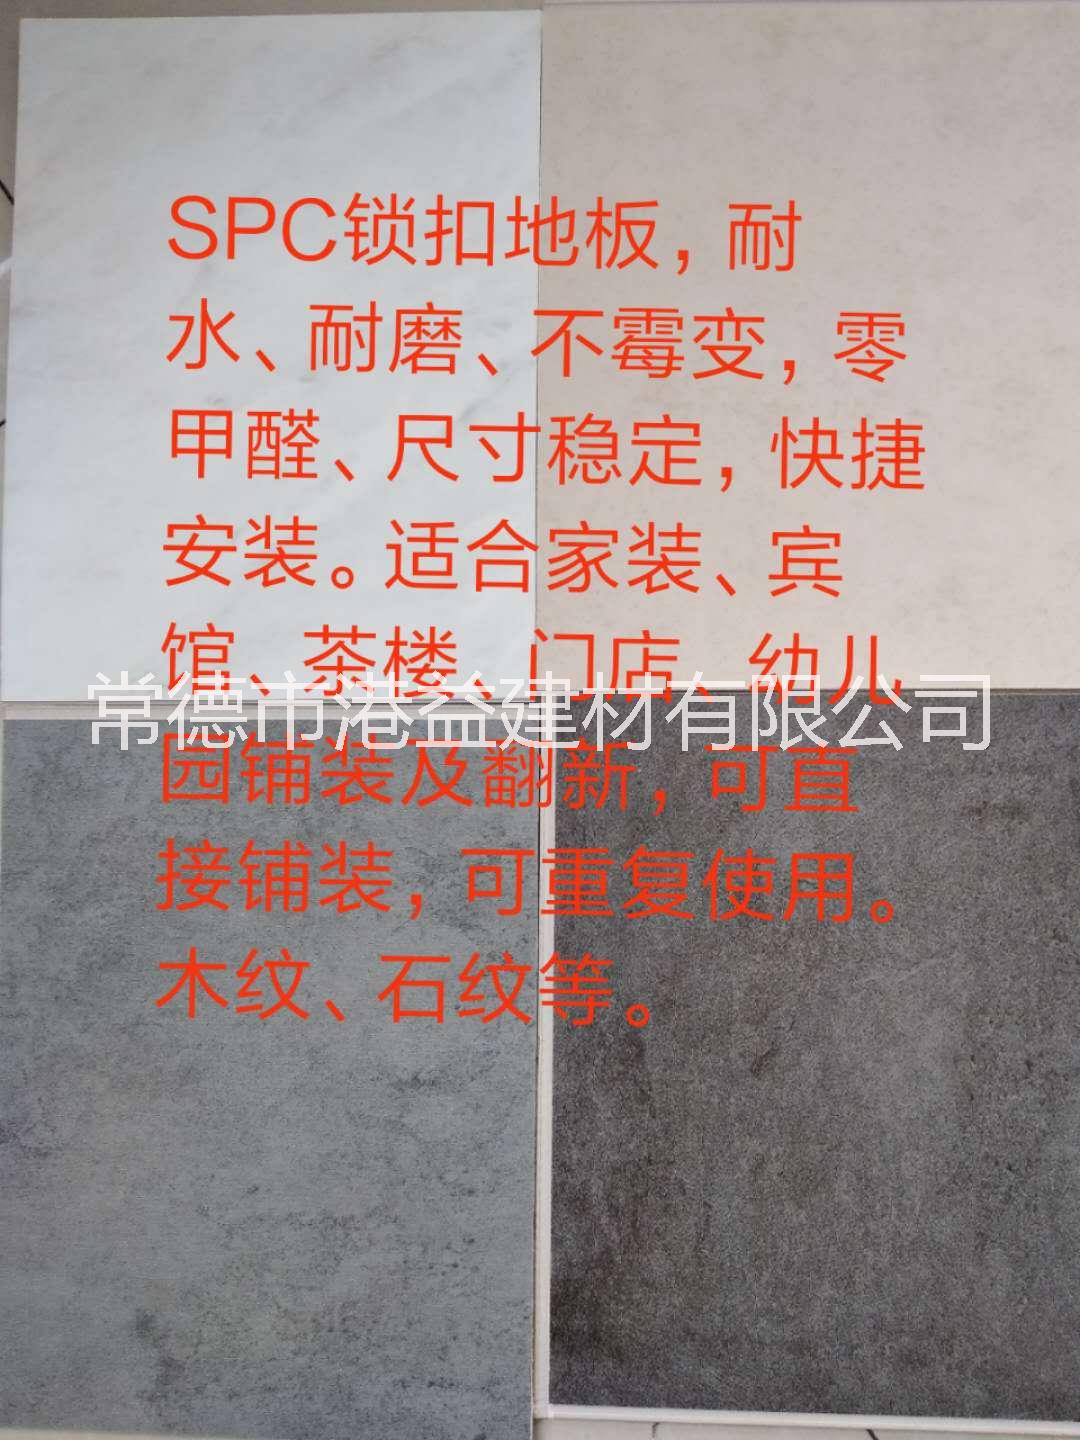 SPC锁扣地板PVC塑胶地板湖南常德总代理批发价